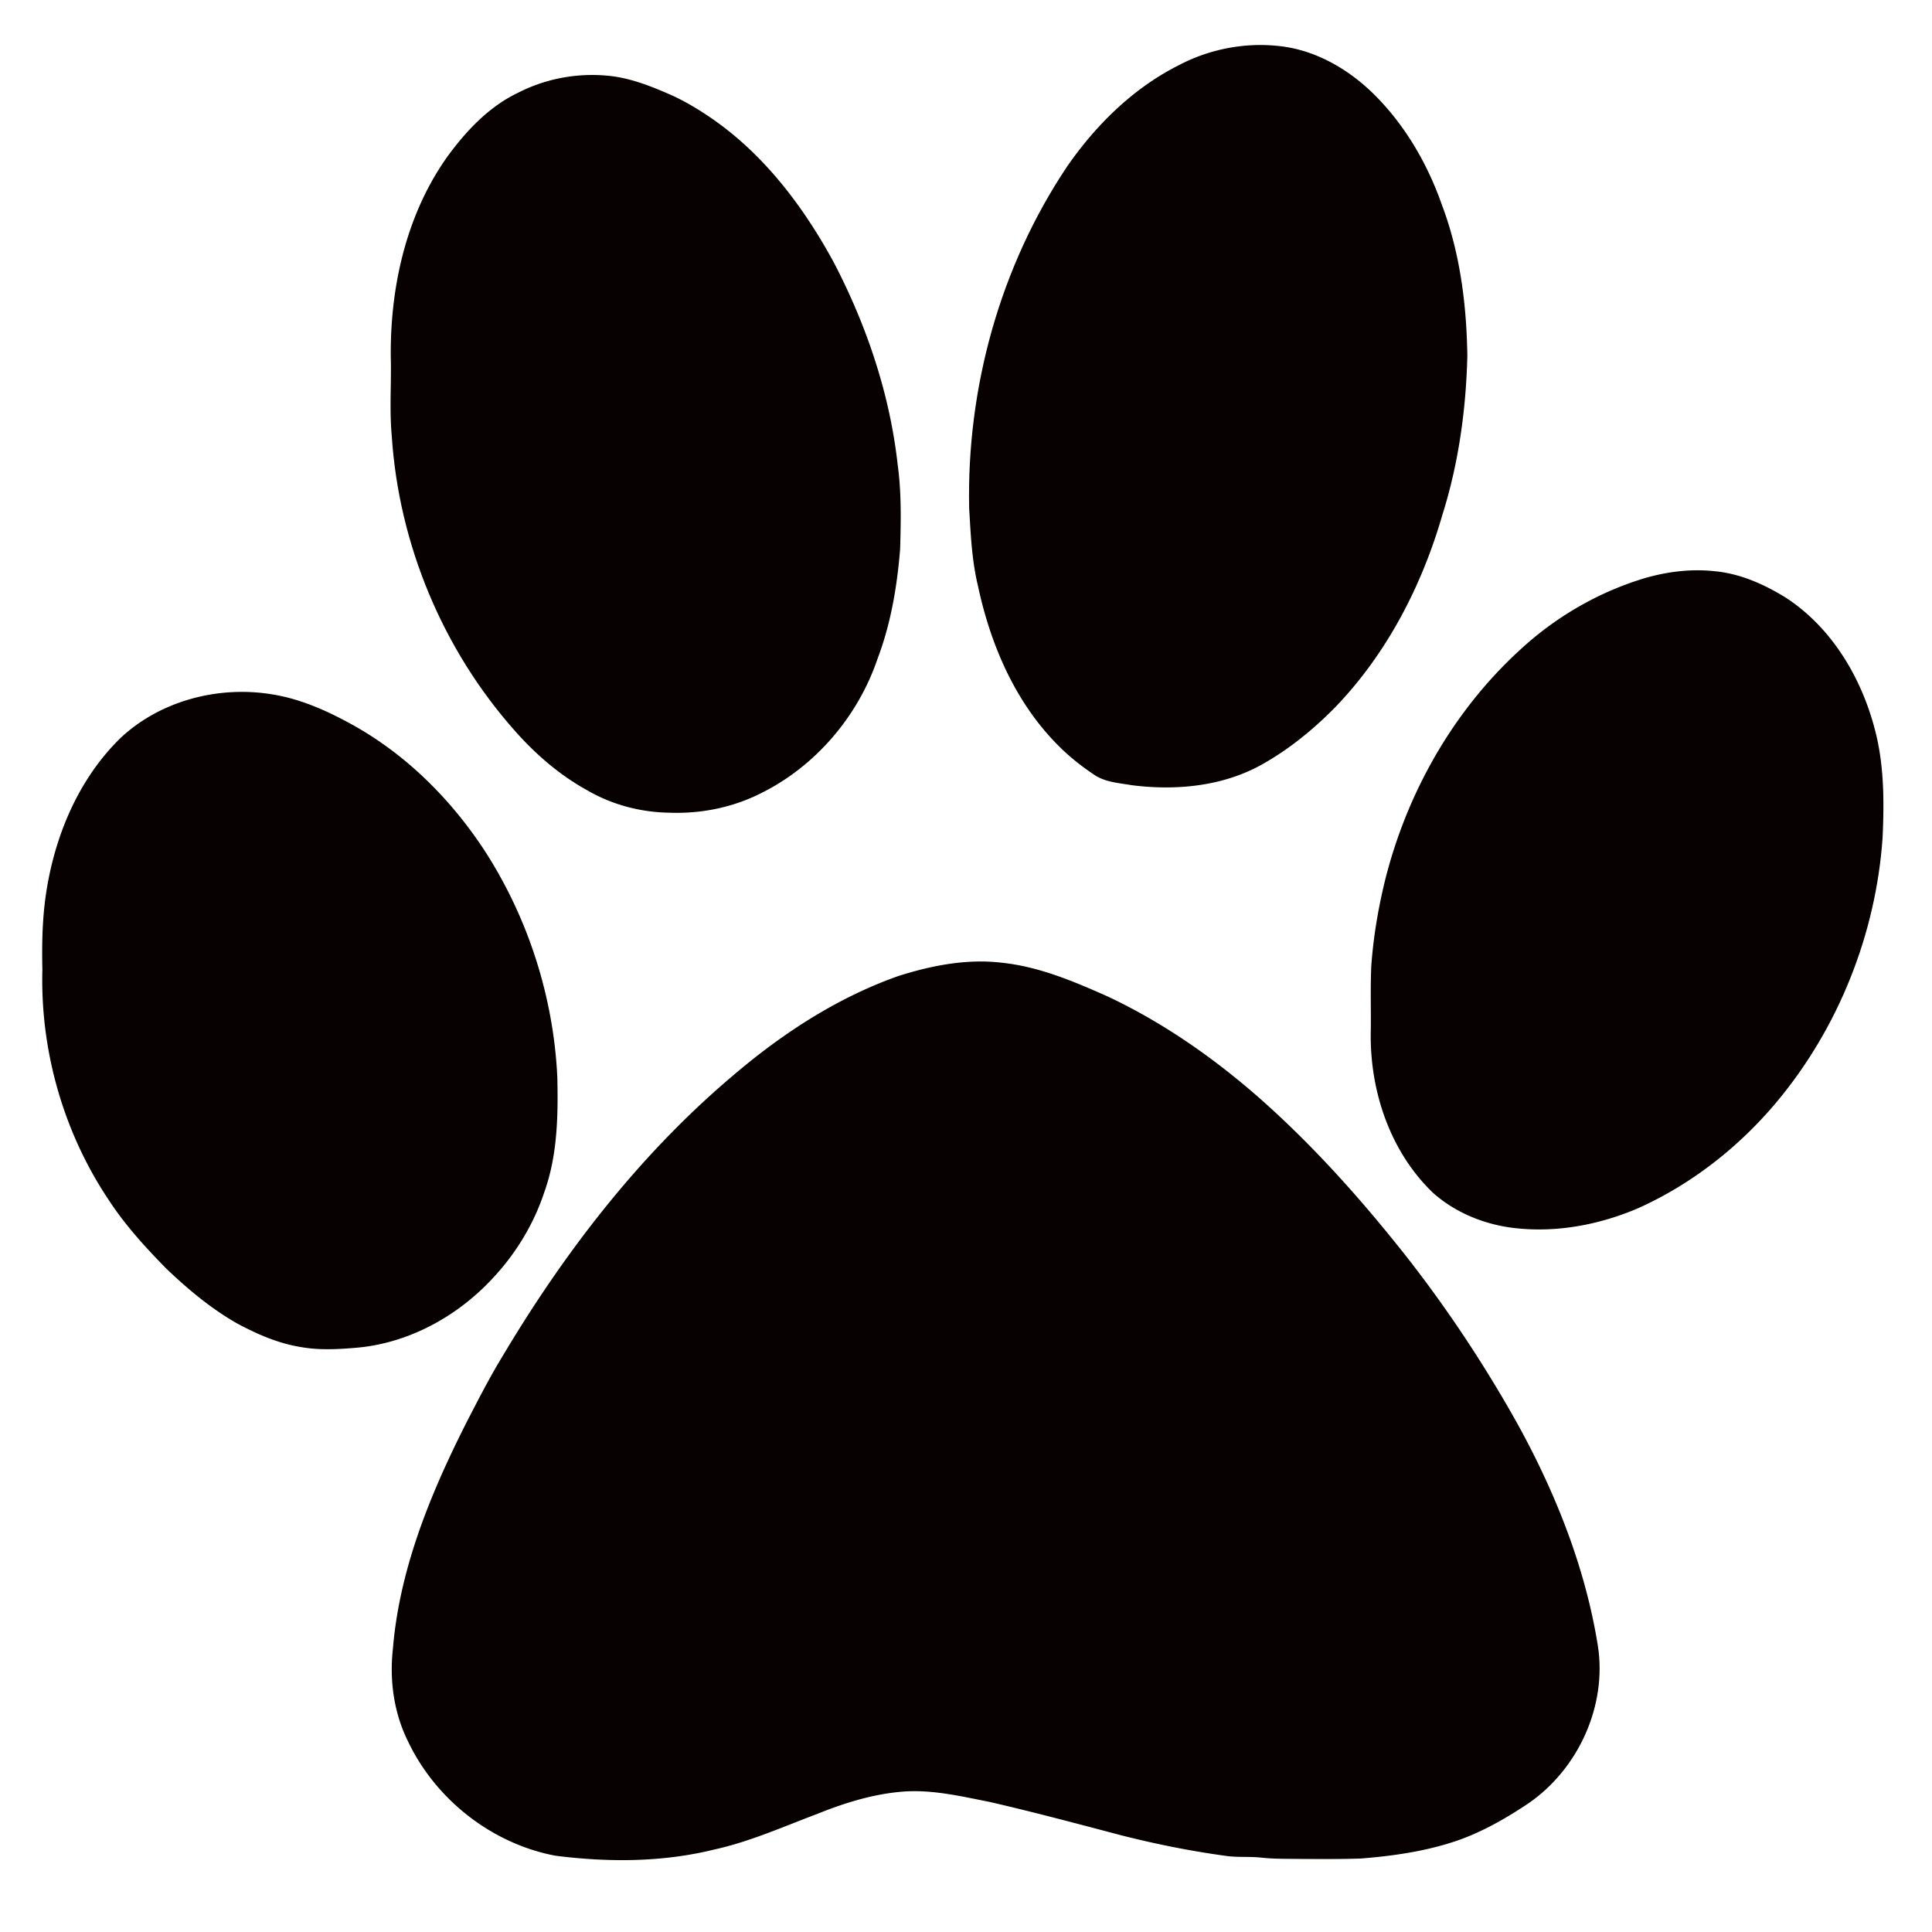 Clip art Dog Paw Cat Illustration - Dog png download - 2500*2500 - Free ...